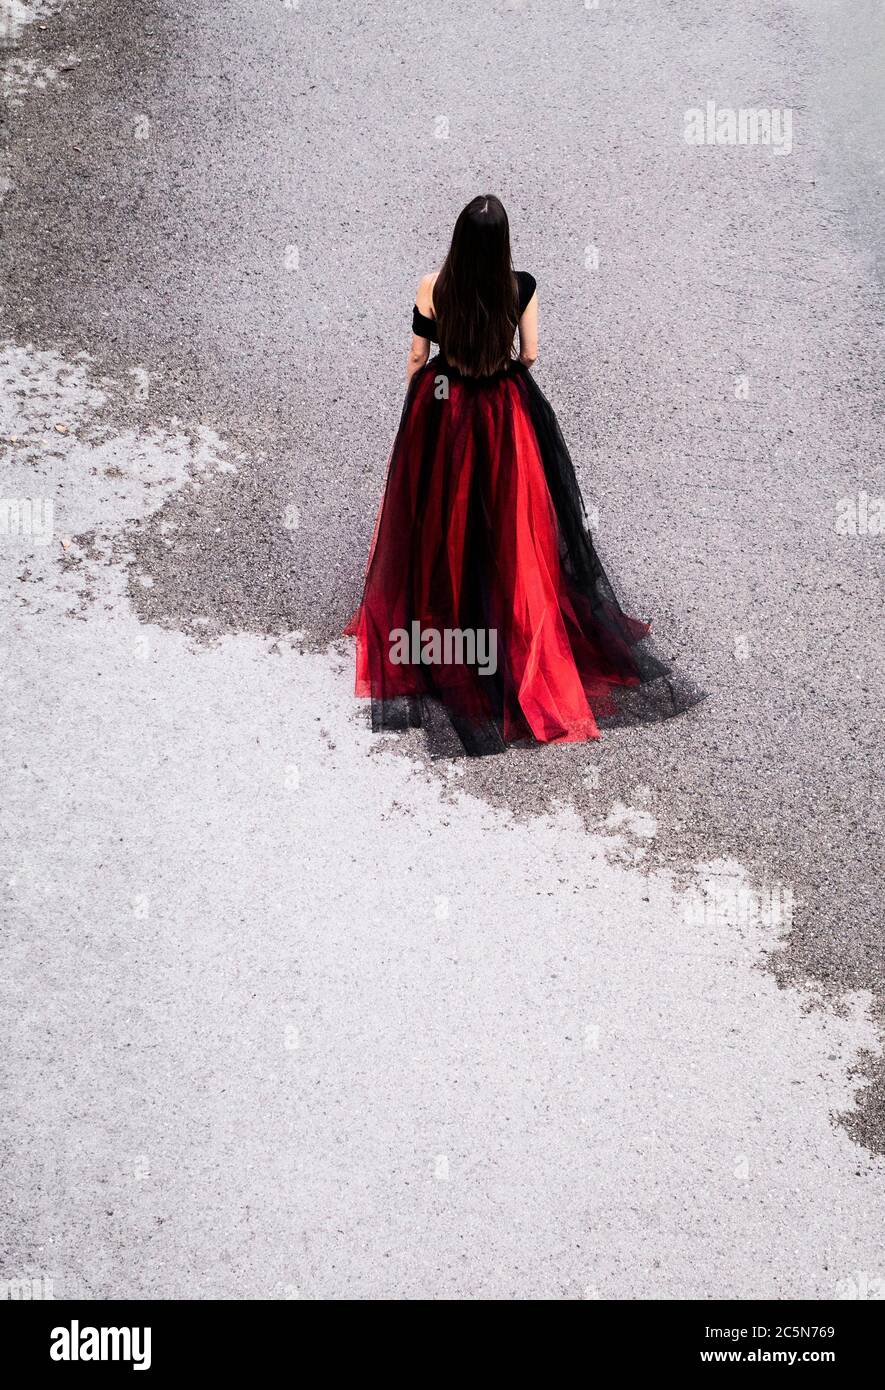 Frau im Kleid auf einer teilweise nassen Straße Stockfoto